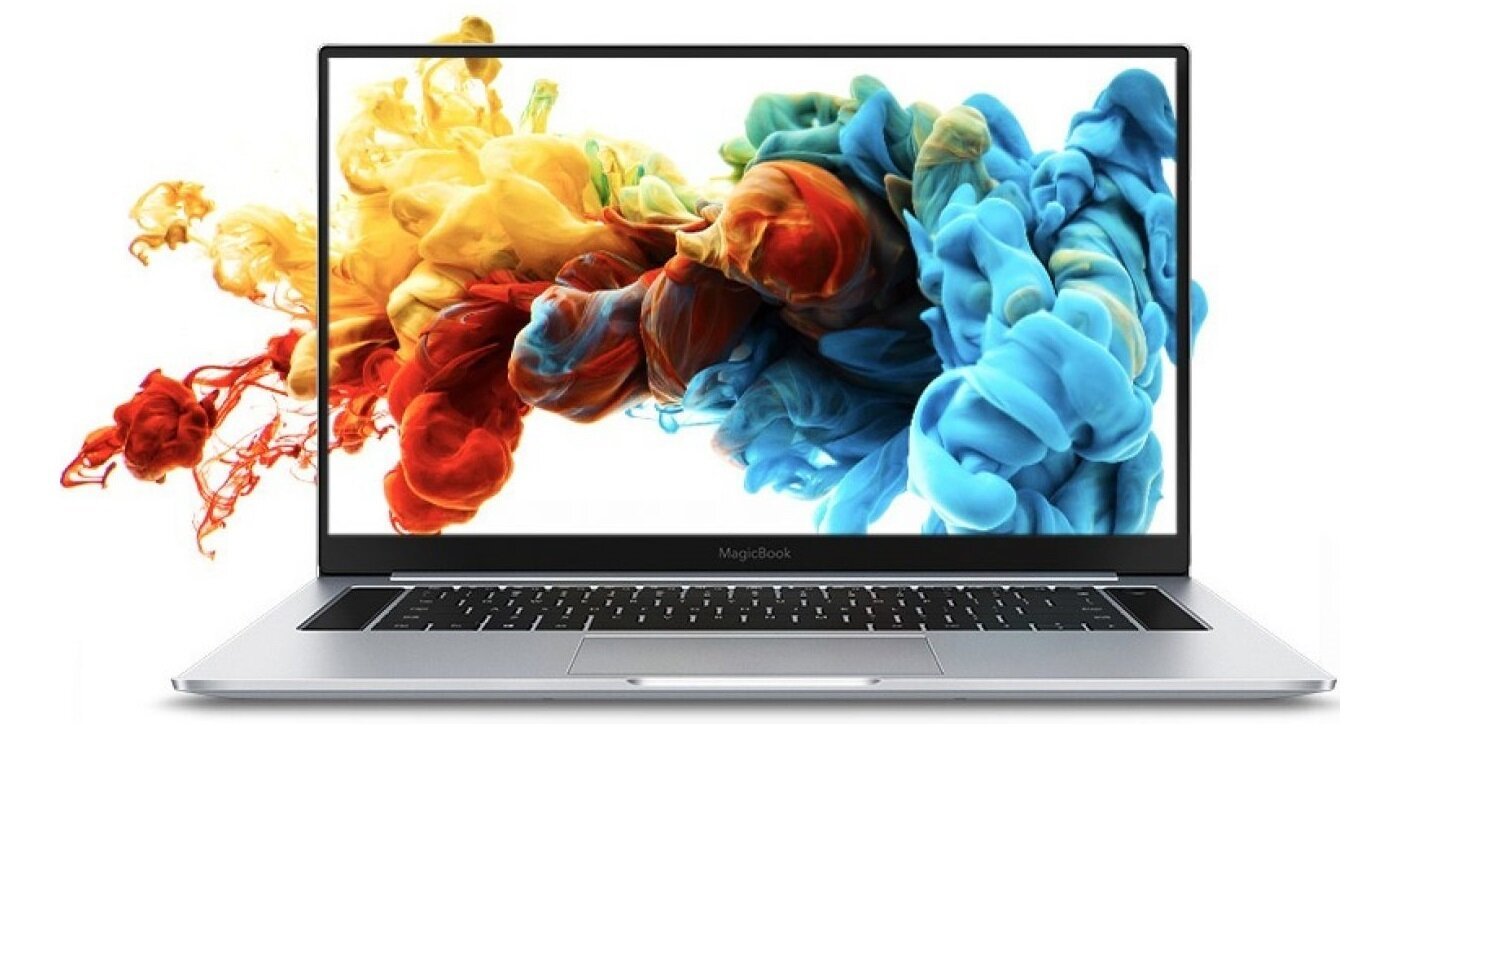 Η Honor ανακοίνωσε το ανανεωμένο MagicBook Pro (2020) με 10ης γενιάς Intel Core επεξεργαστές